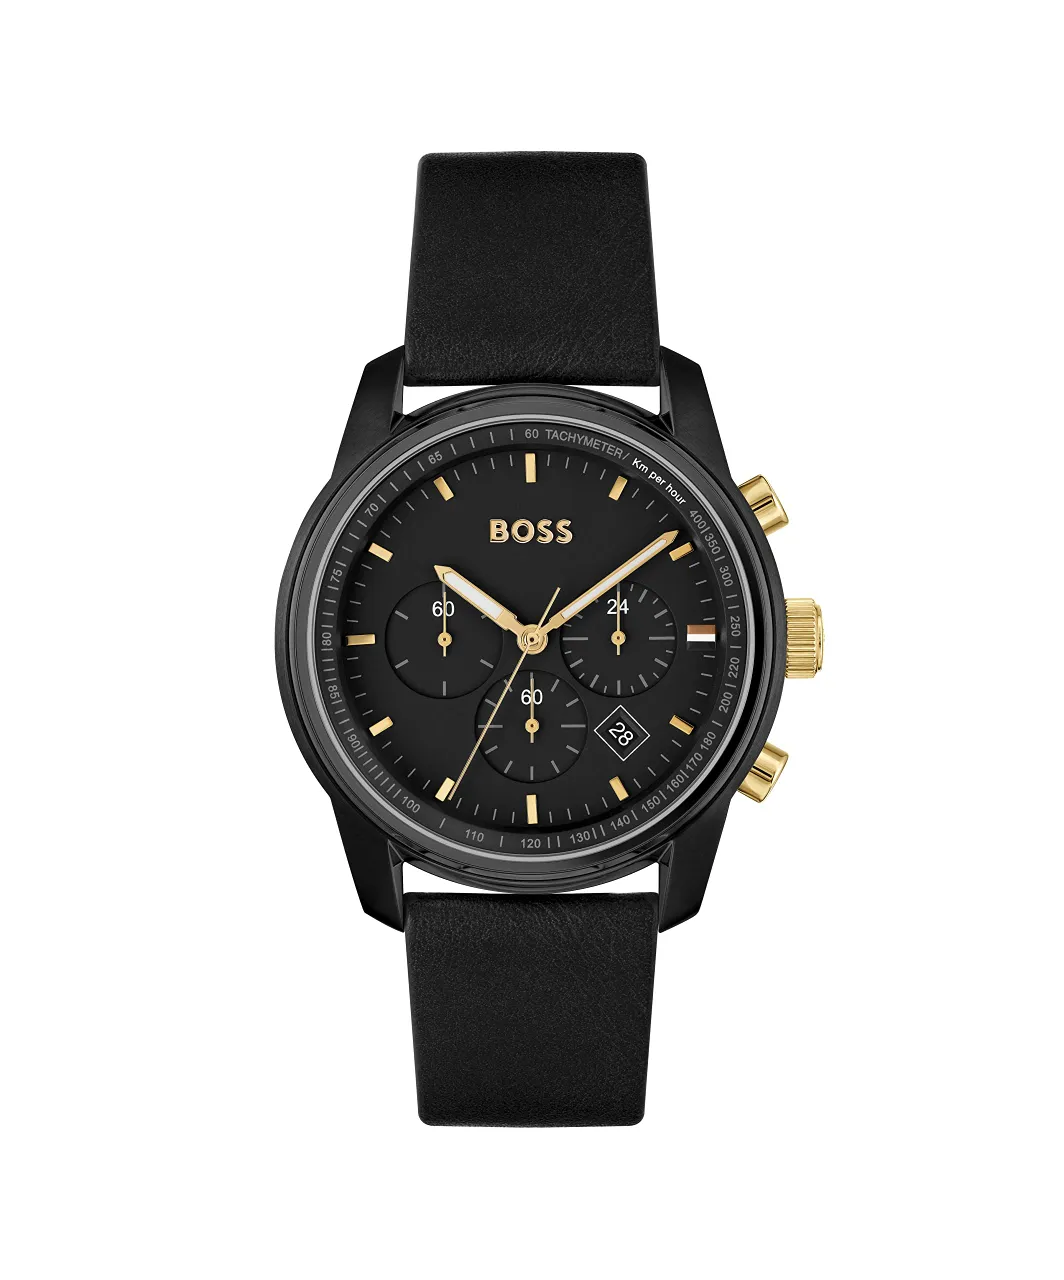 BOSS 1514003 Quartz chronograaf herenhorloge met zwarte